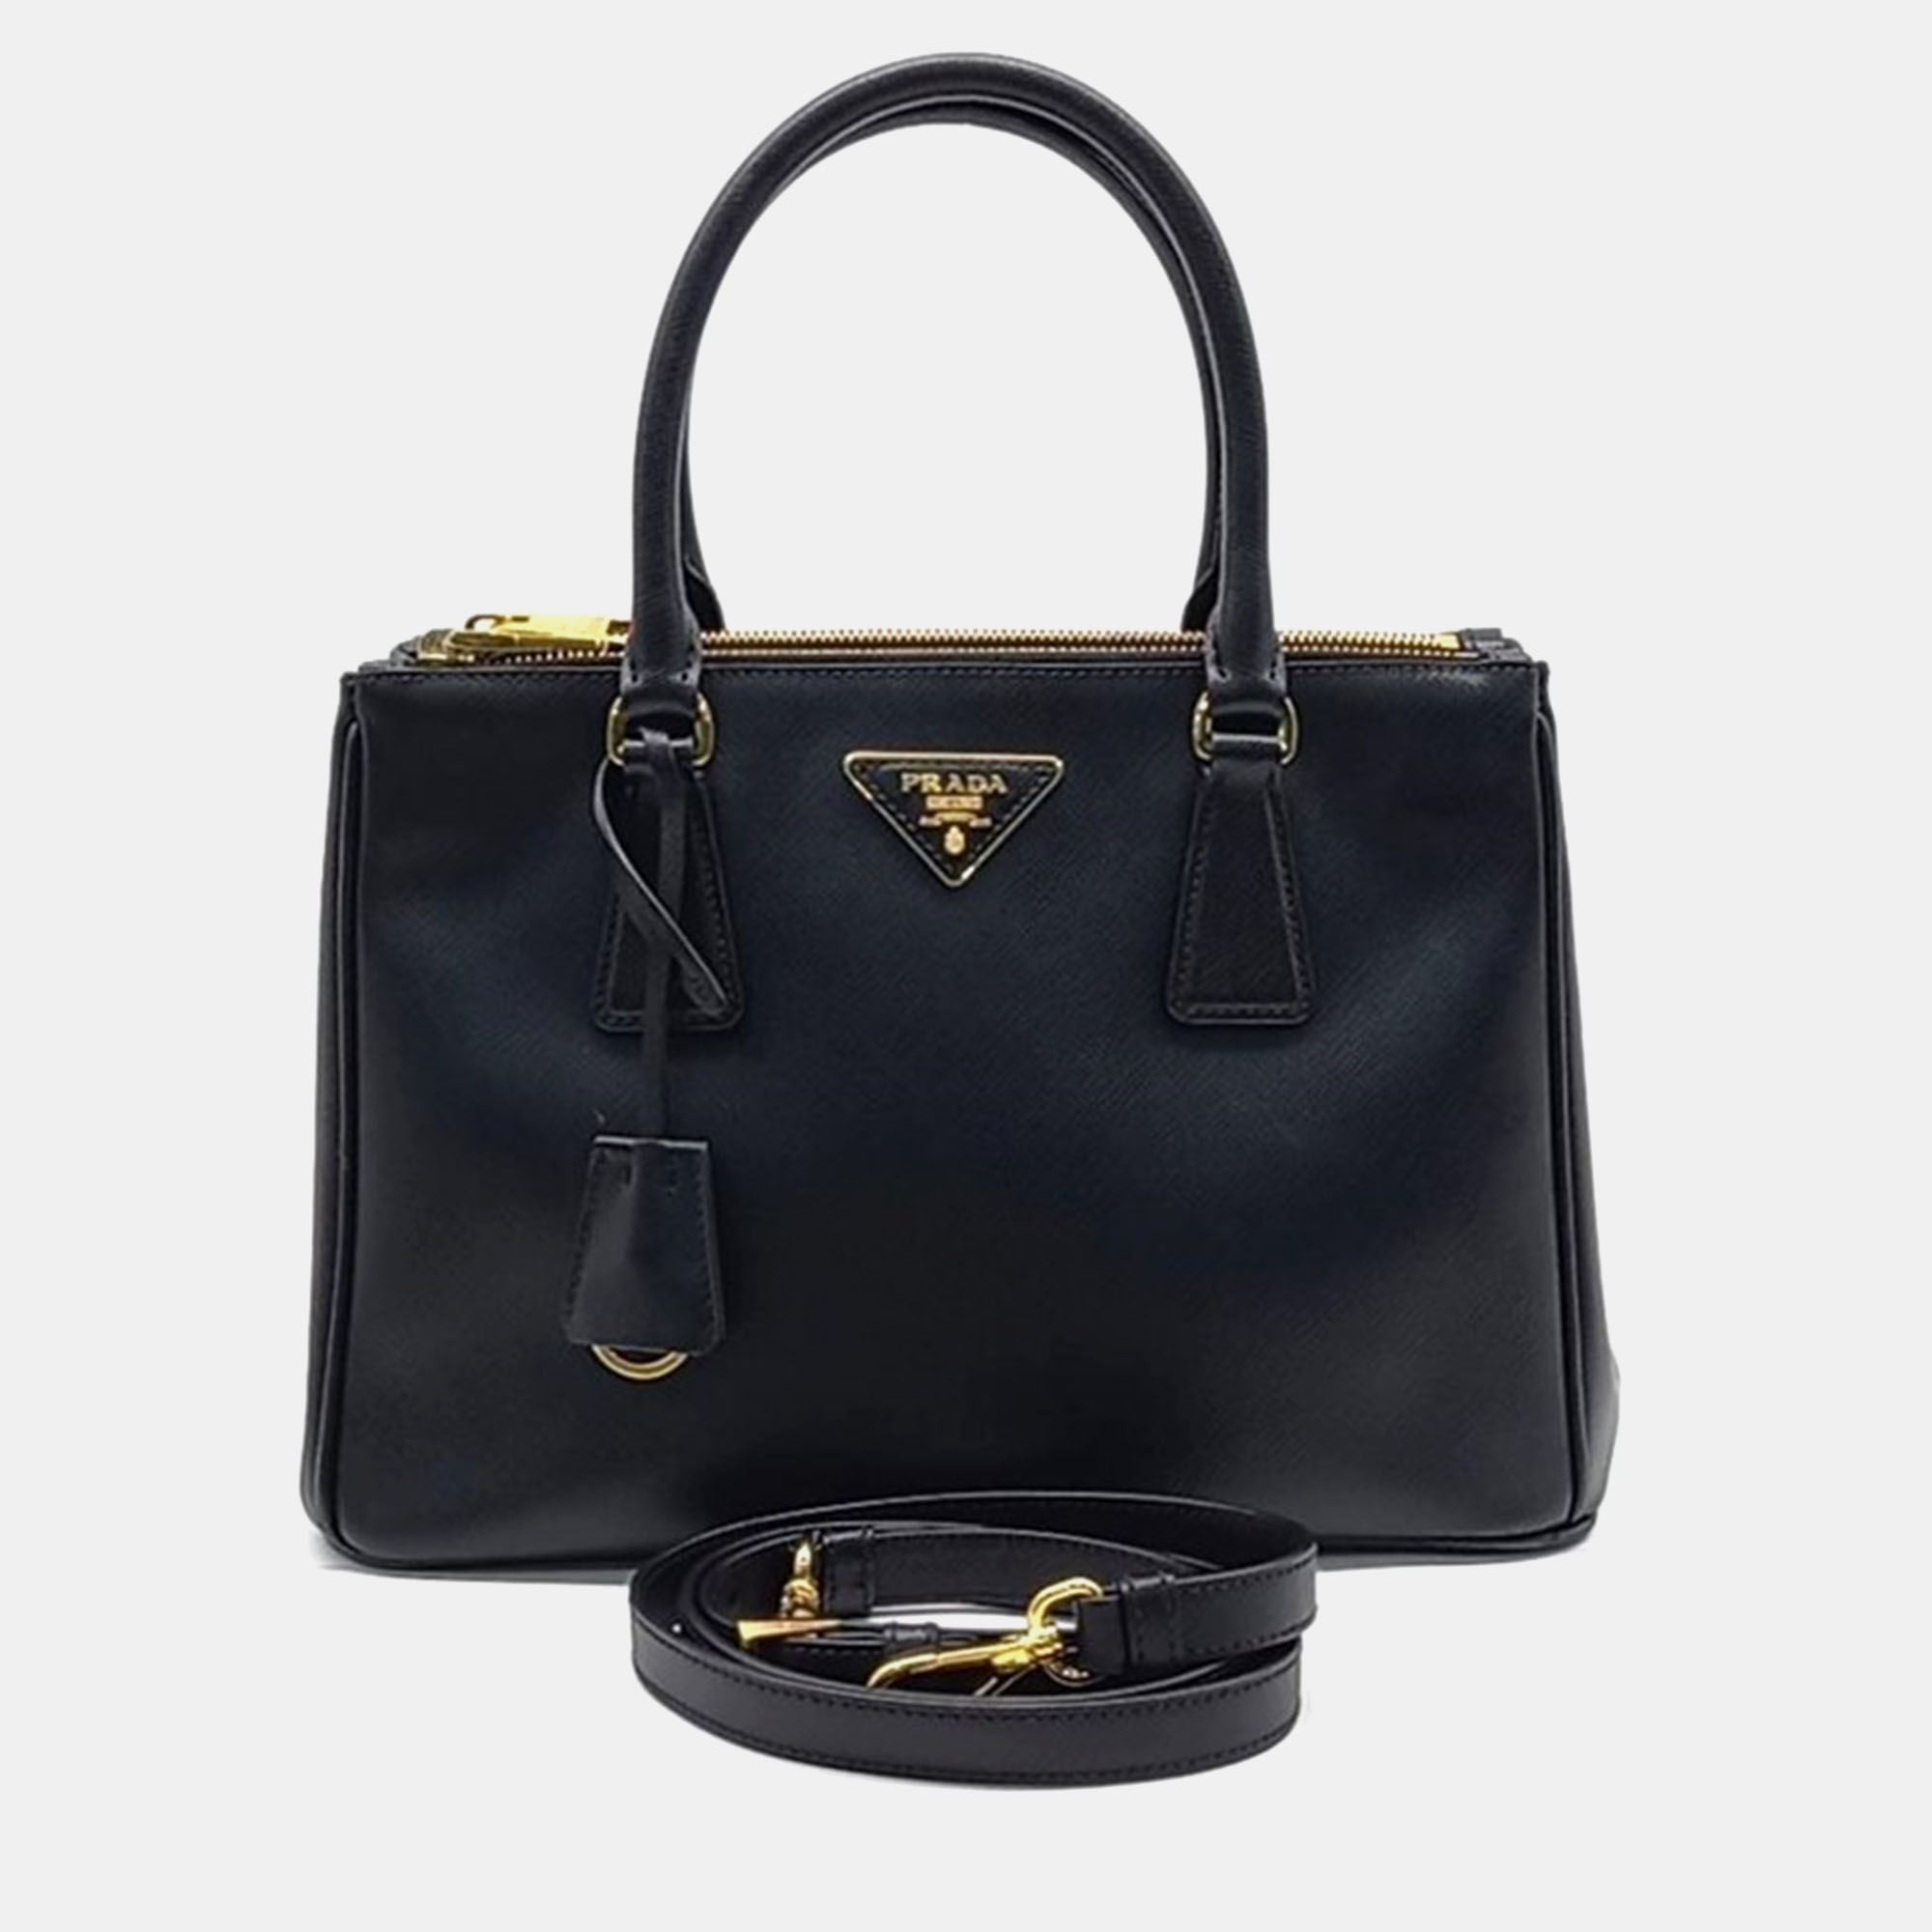 

Prada Black Saffiano Lux Leather Tote Bag